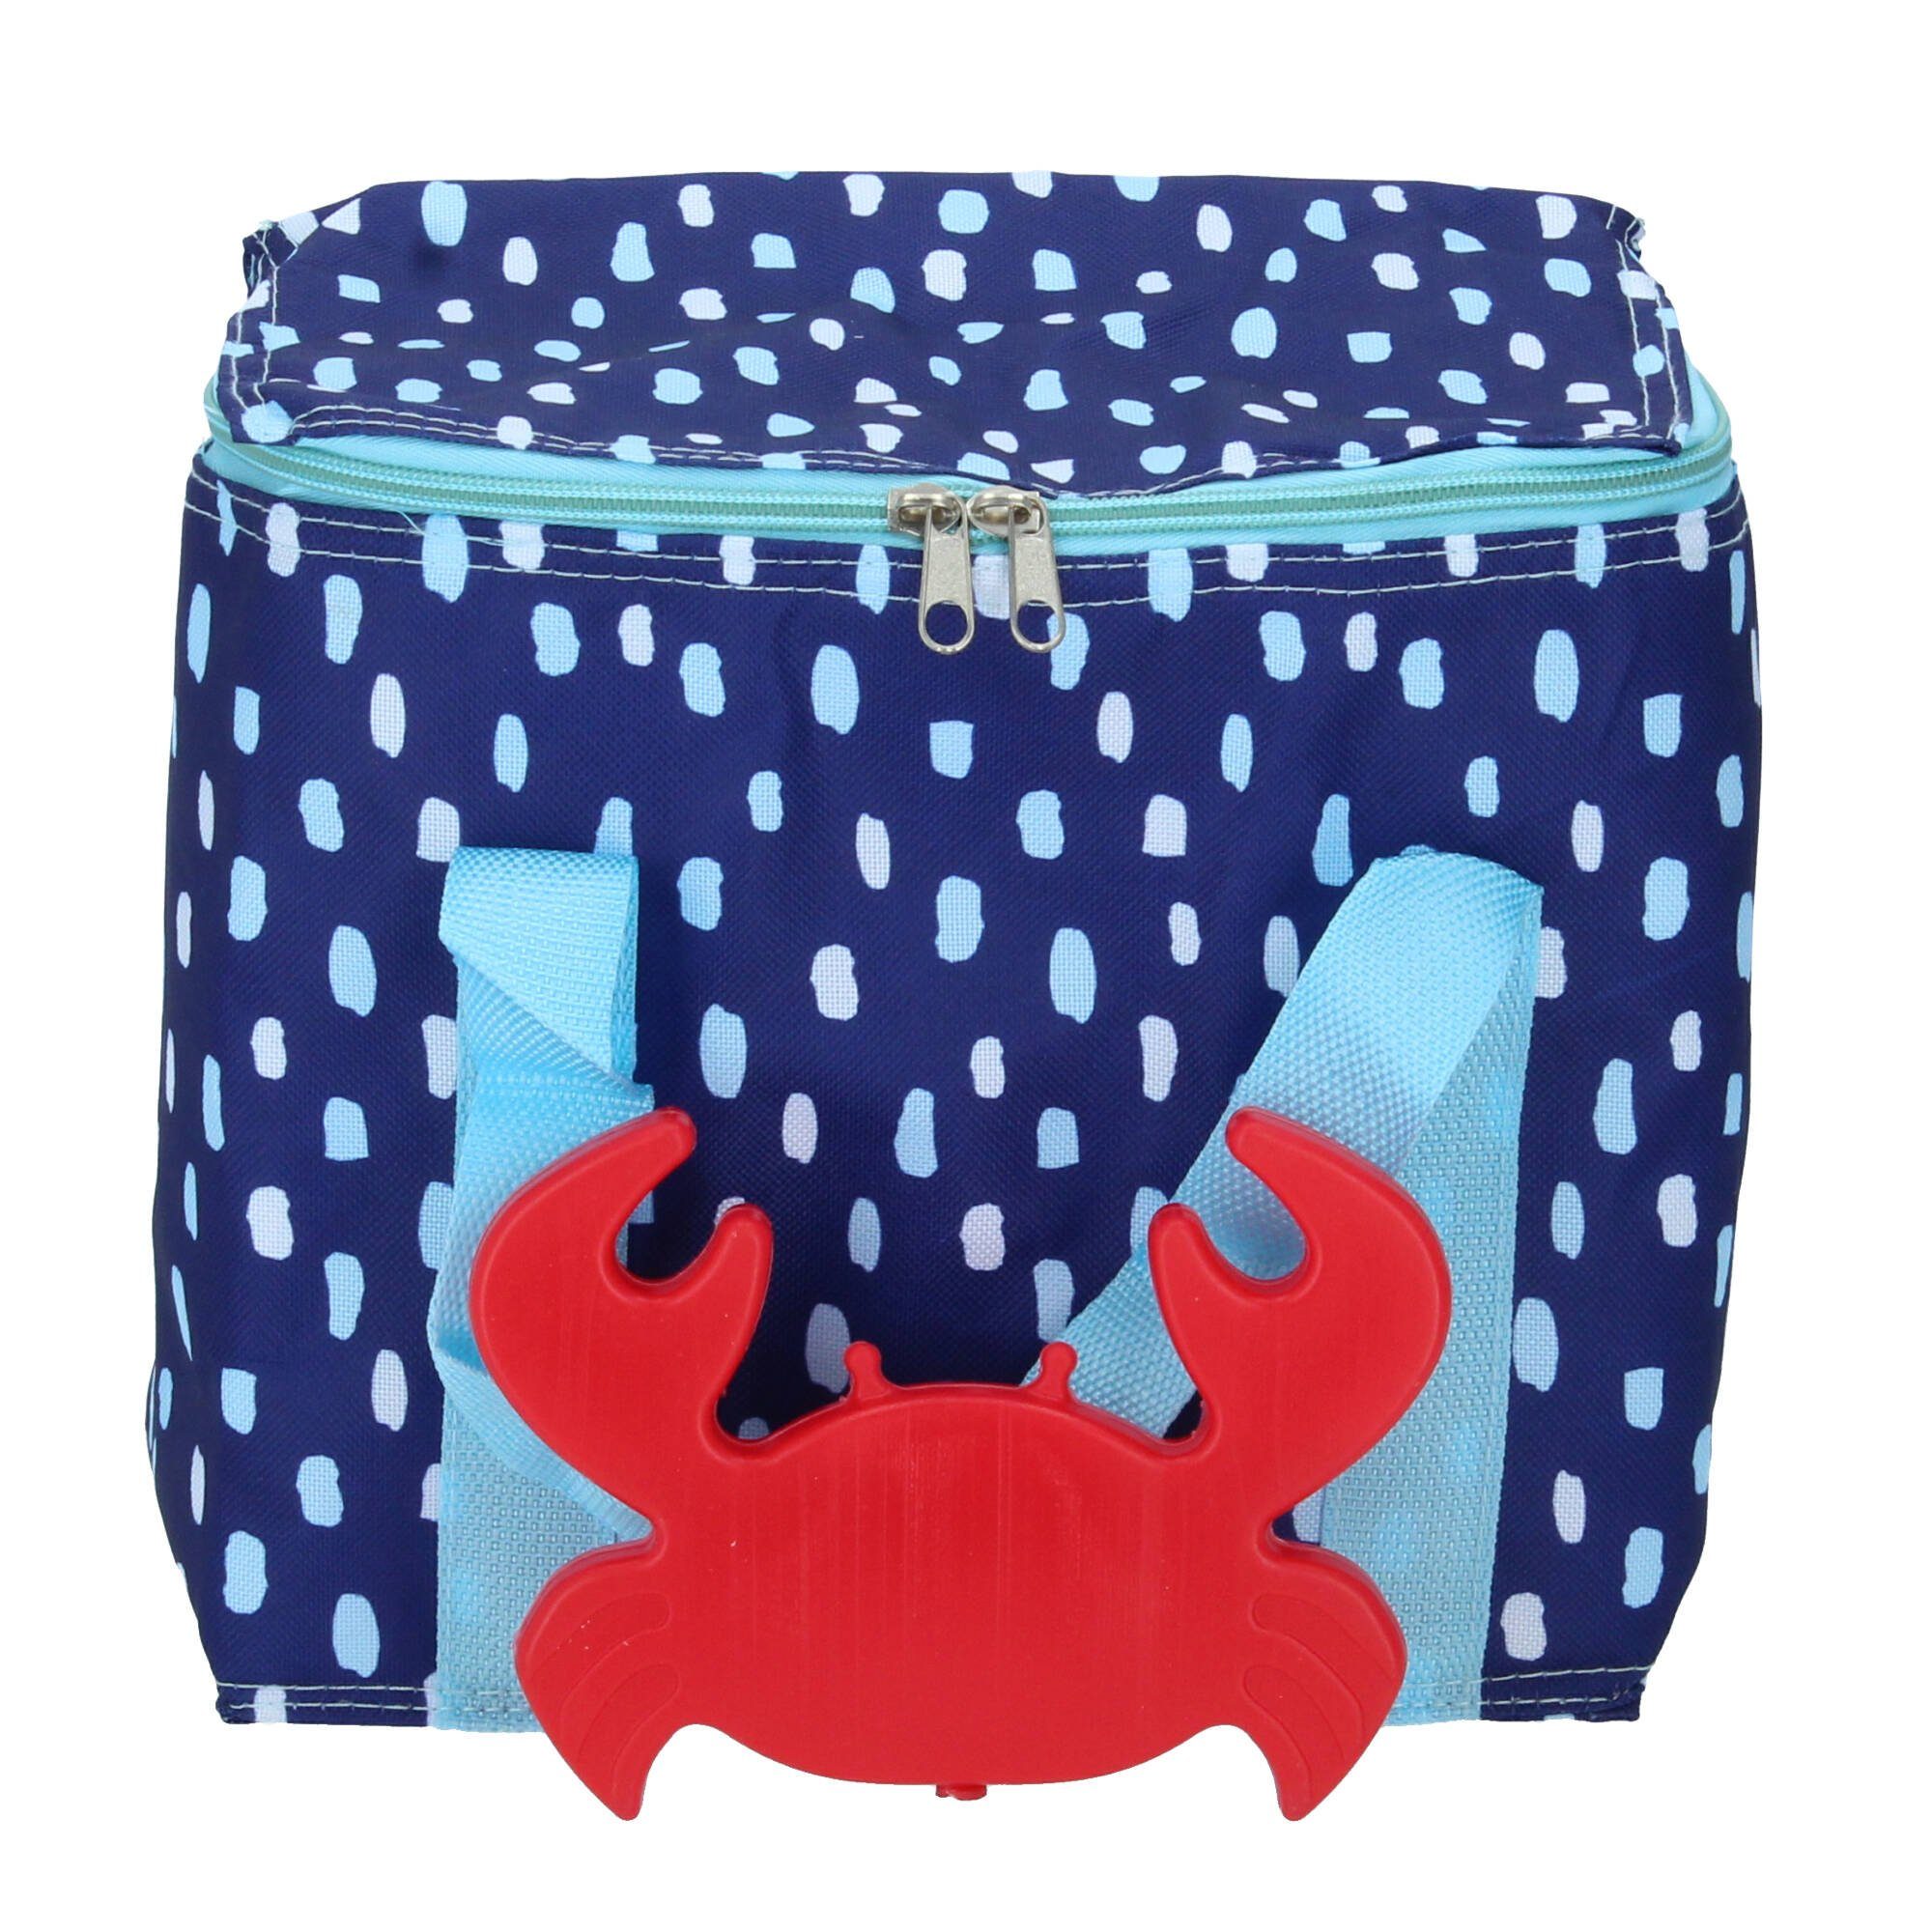 Krabbe Porta L mit Seaside Ladelle Einkaufsshopper blau Kühlakku 7